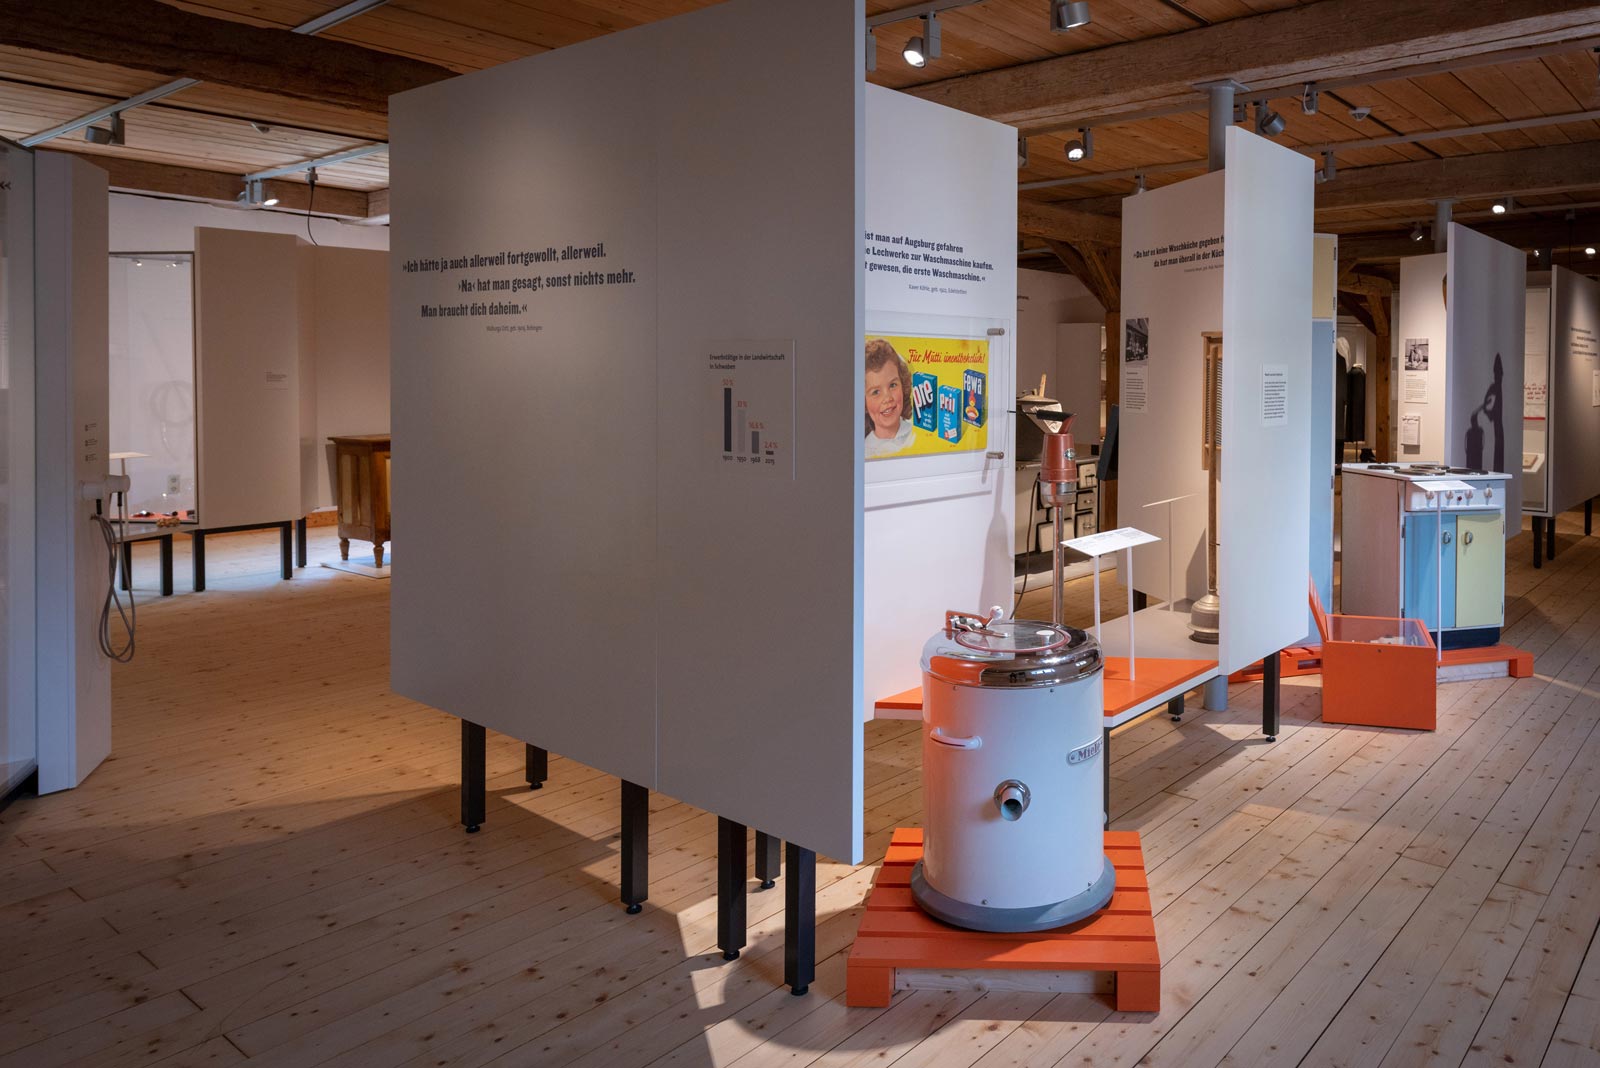 Das Referenzbild für Ausstellungsgestaltung aus der Dauerausstellung Tradition und Umbruch zeigt den Ausstellungsparcours mit einer Exponatpräsentation.